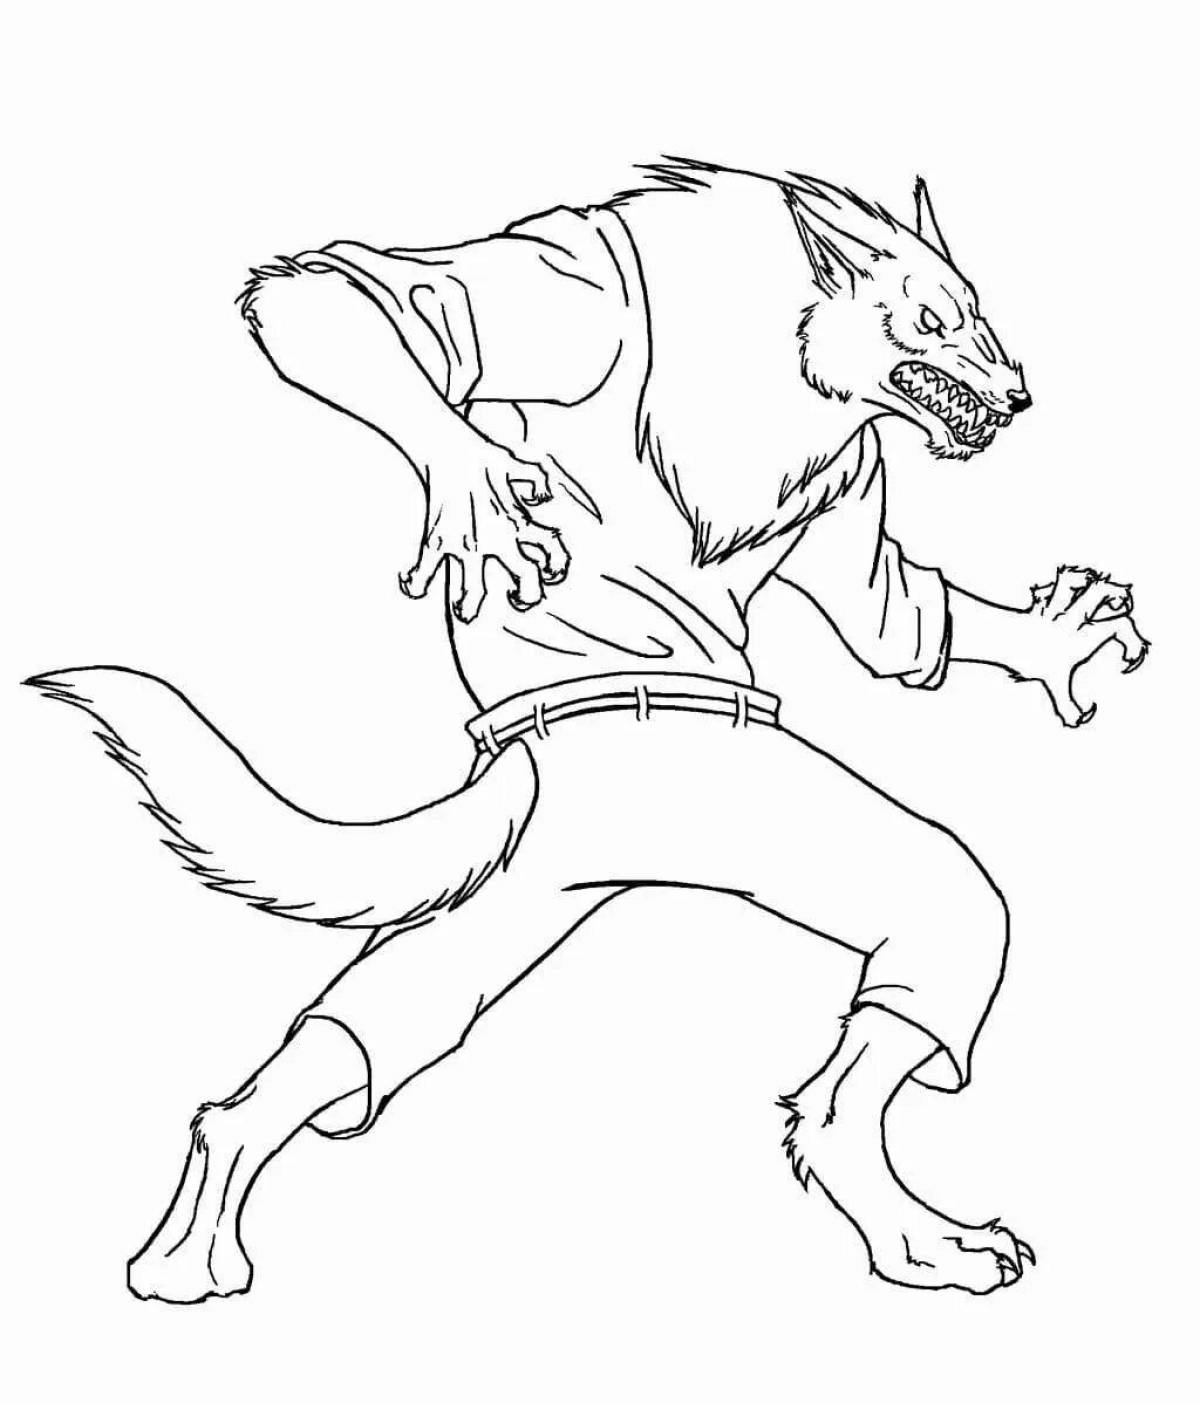 Werewolf #2